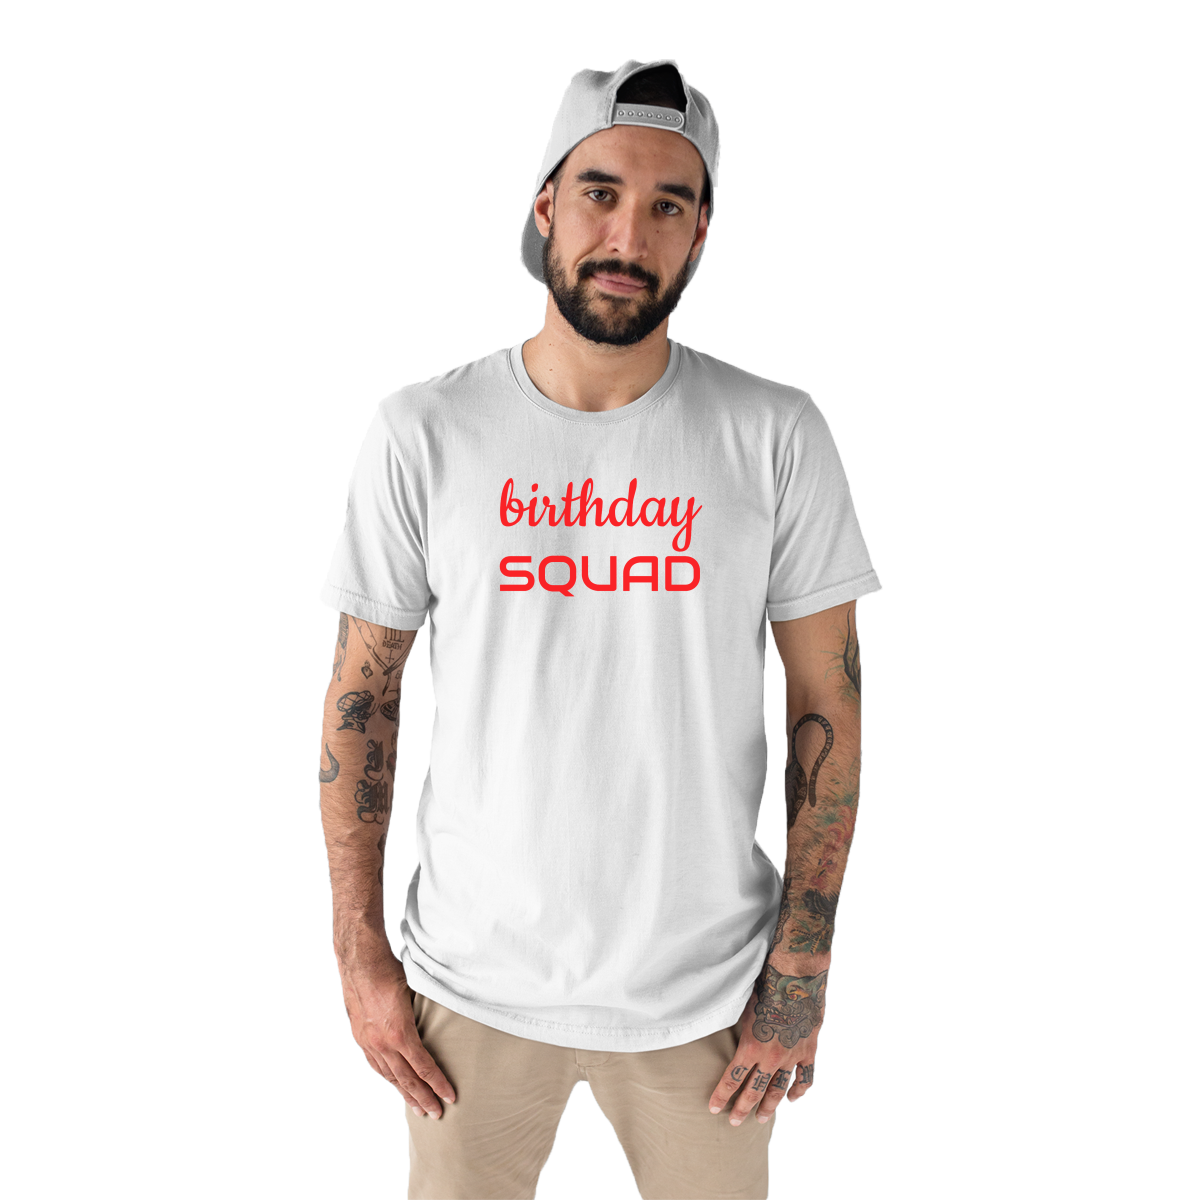 Birthday SQUAD Men's T-shirt | White